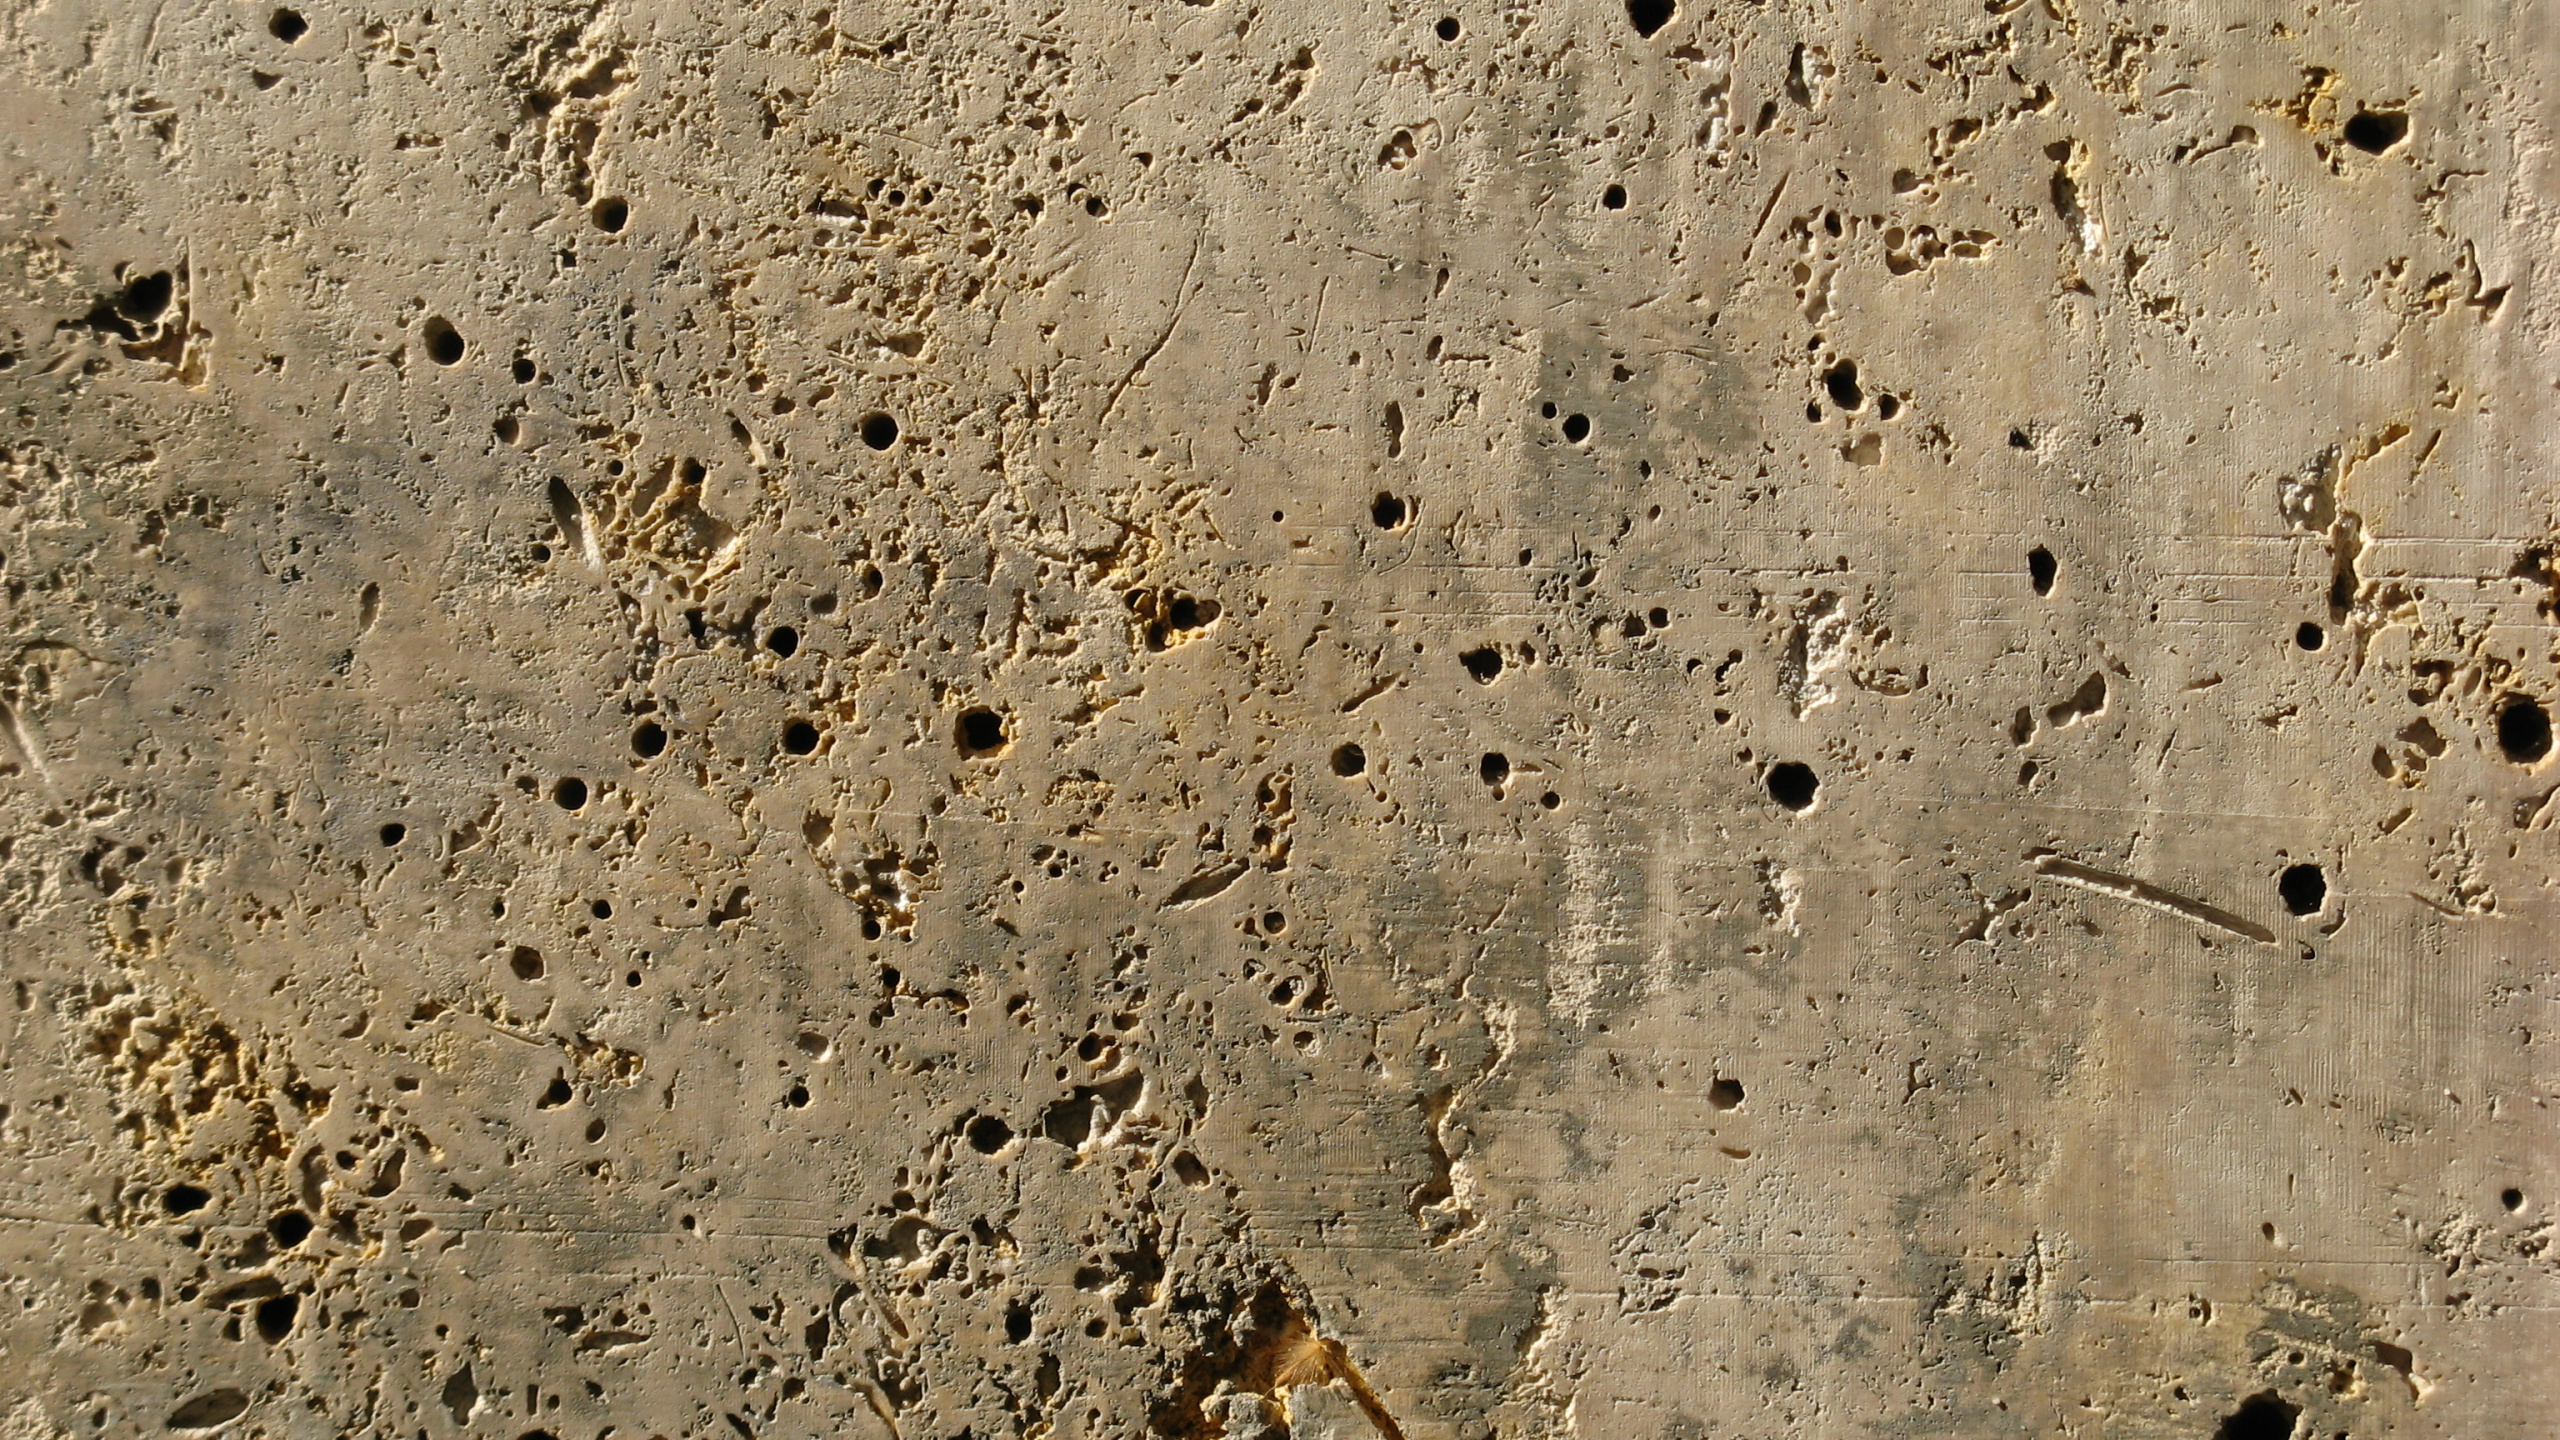 的土壤, 混凝土, 沙, 地质学, 古代历史 壁纸 2560x1440 允许